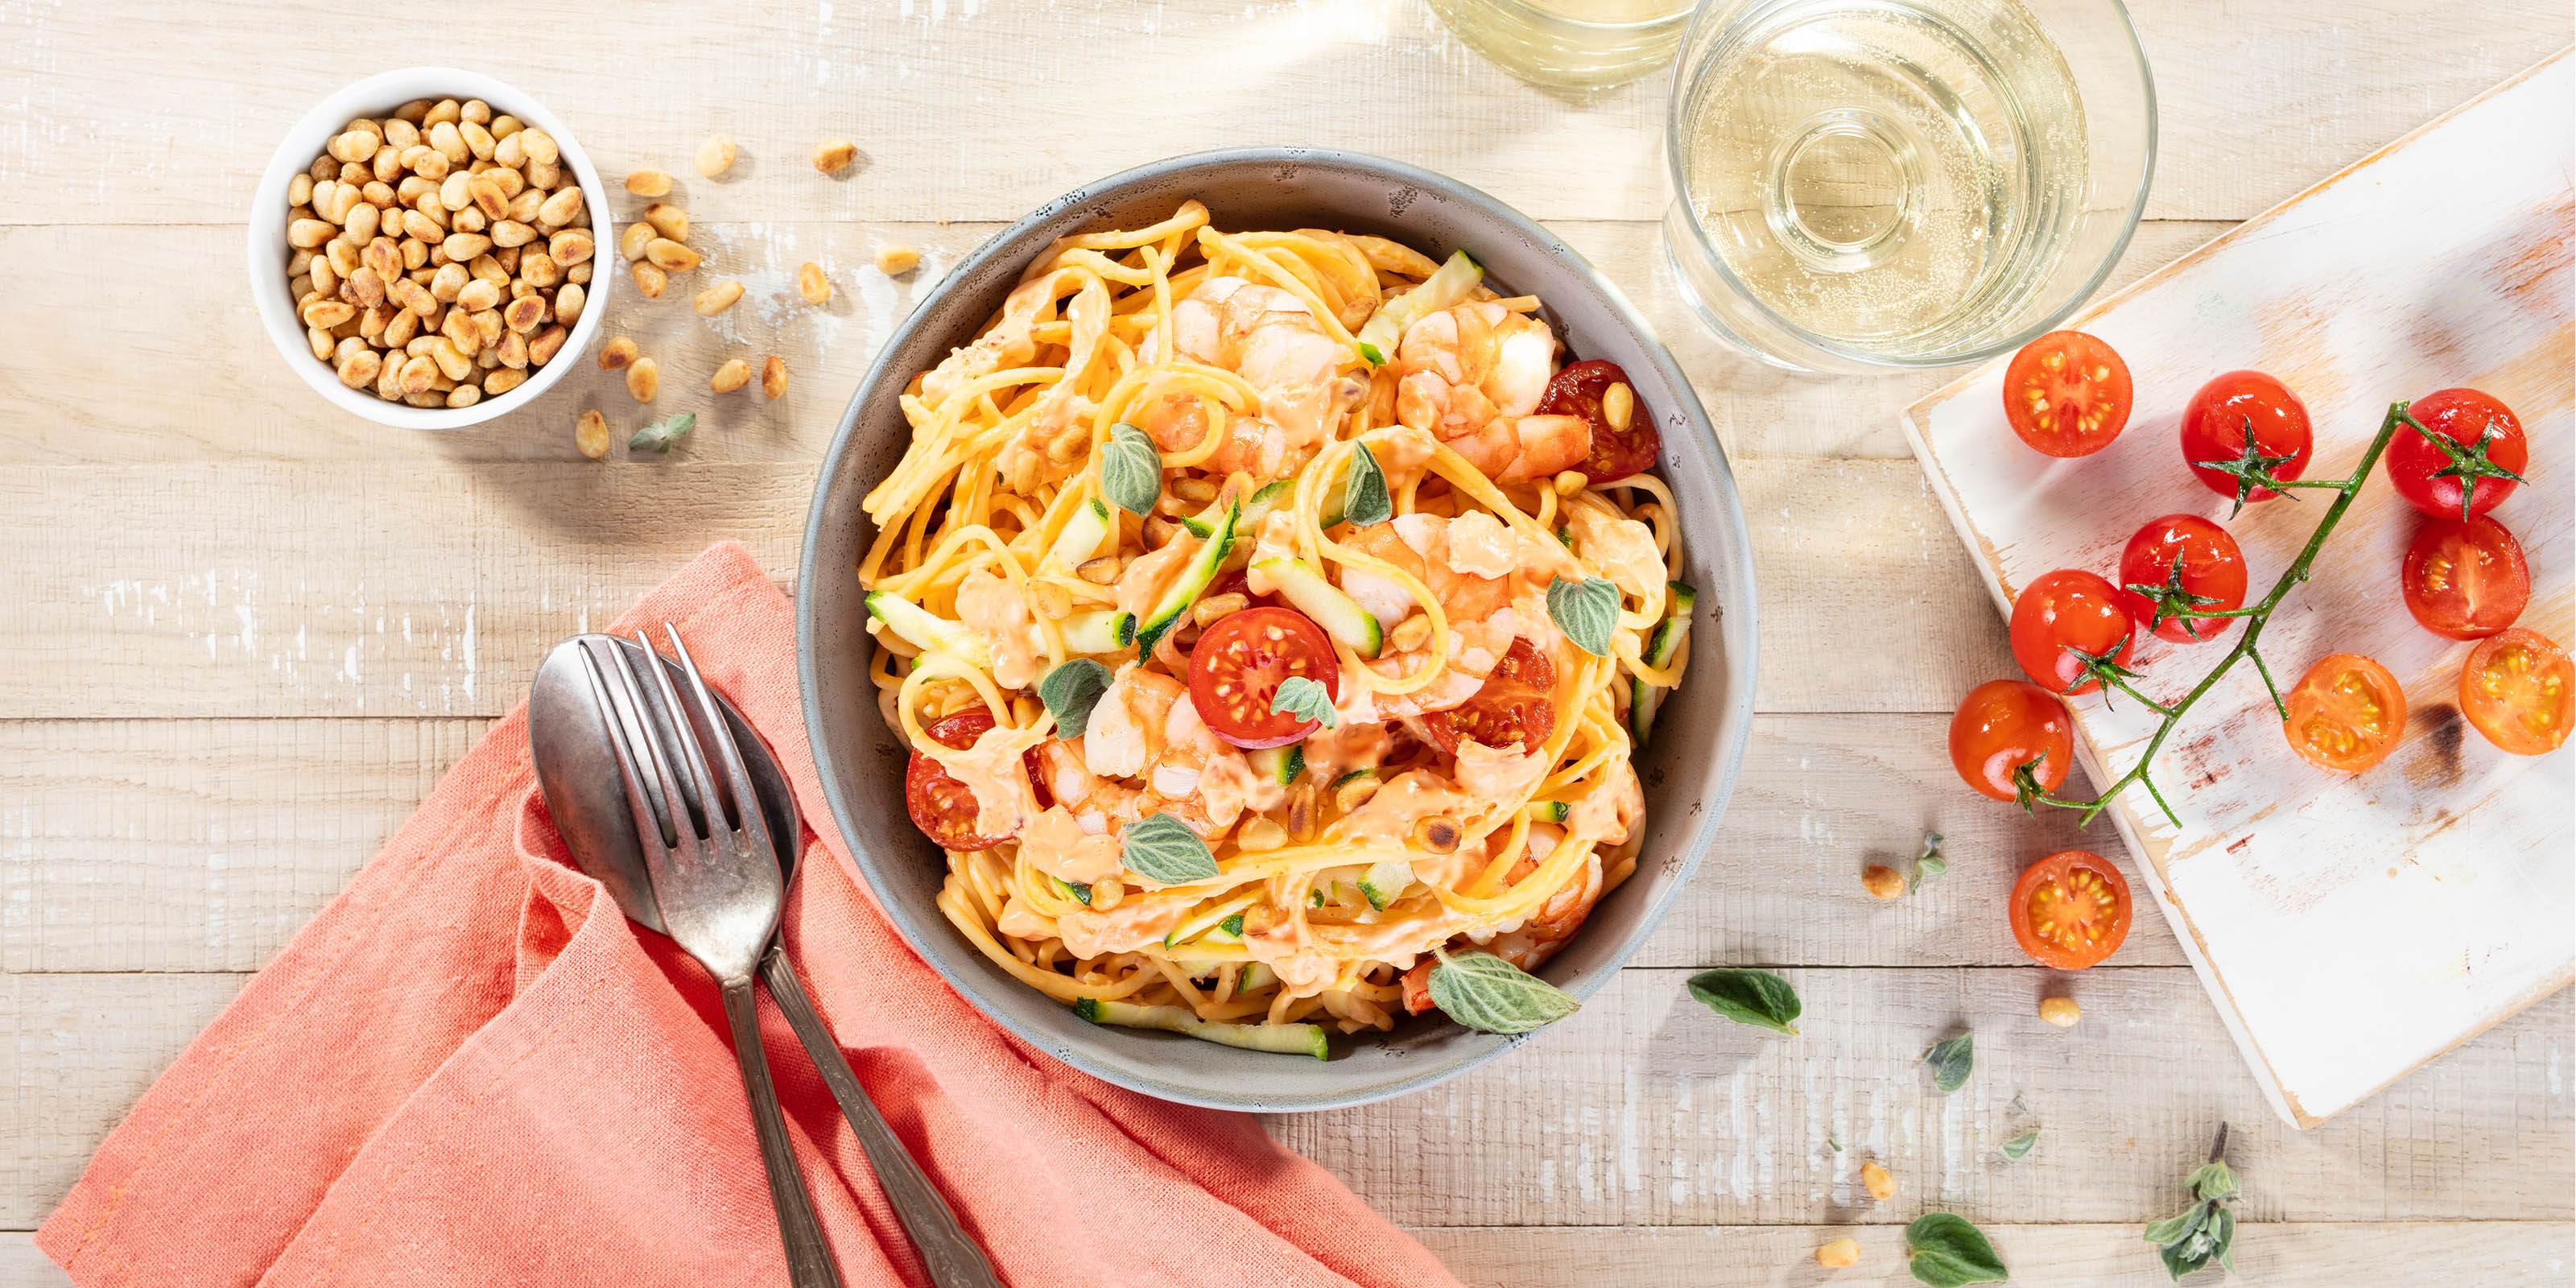 Leckere Spaghetti mit saftigen Garnelen, frischen Zucchini und süßen Cherrytomaten, serviert in einer eleganten Schale